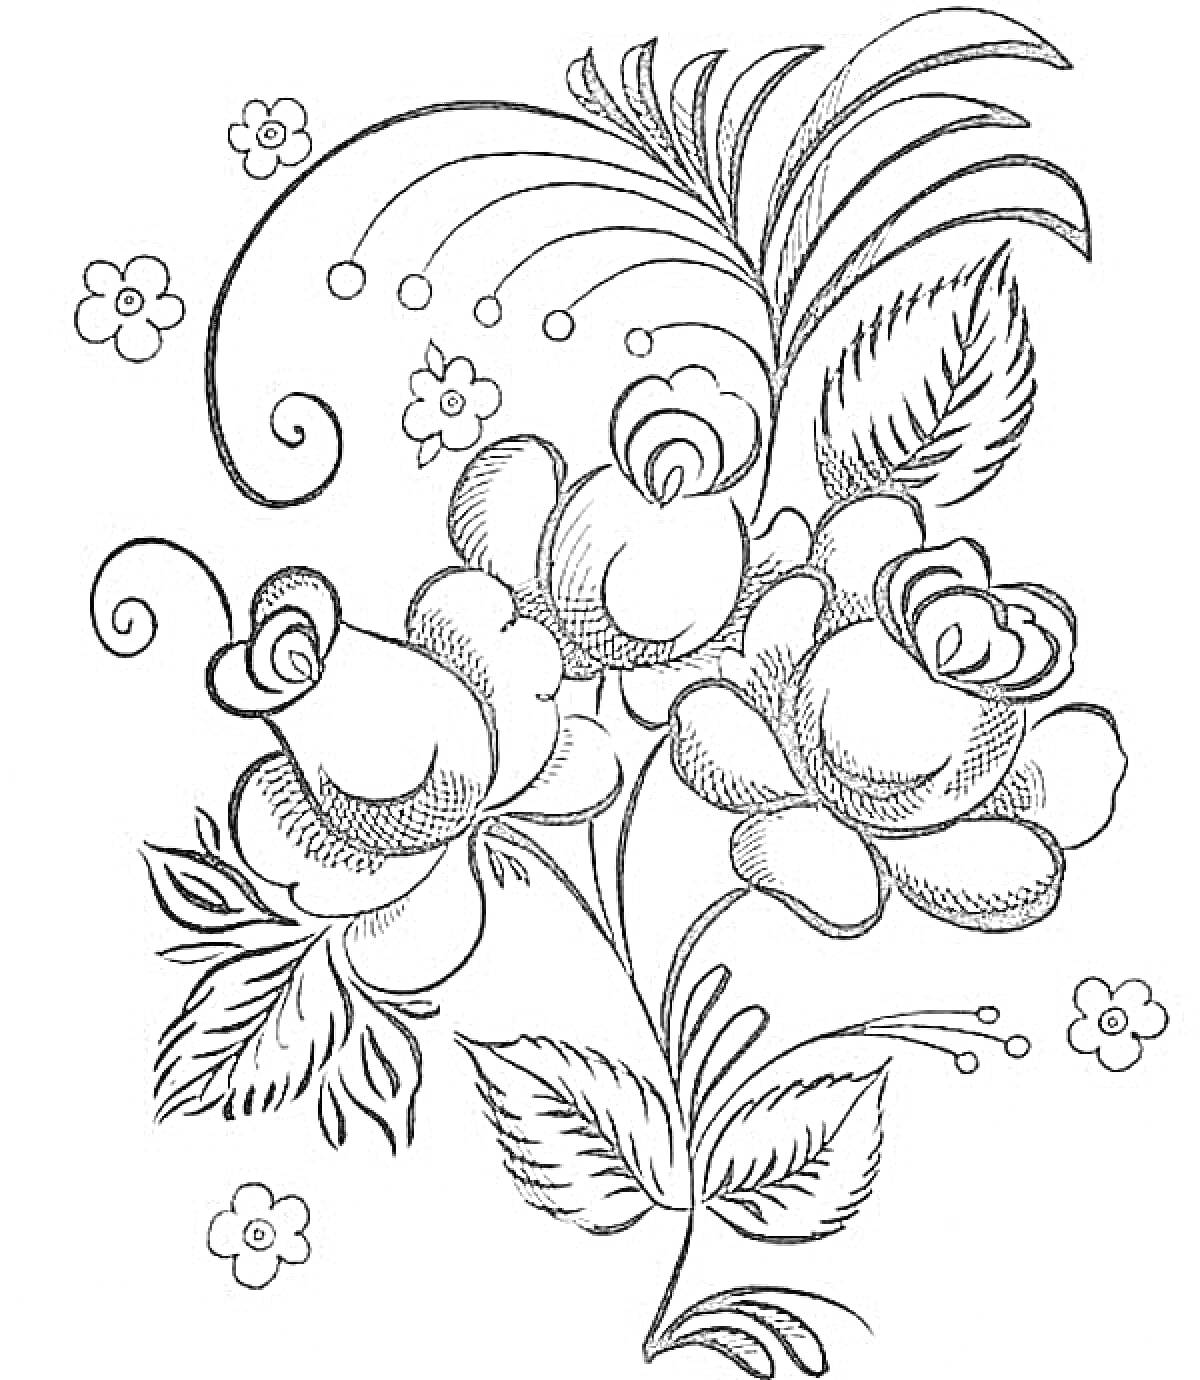 Цветы и листья в стиле Гжель с завитками и мелкими цветами